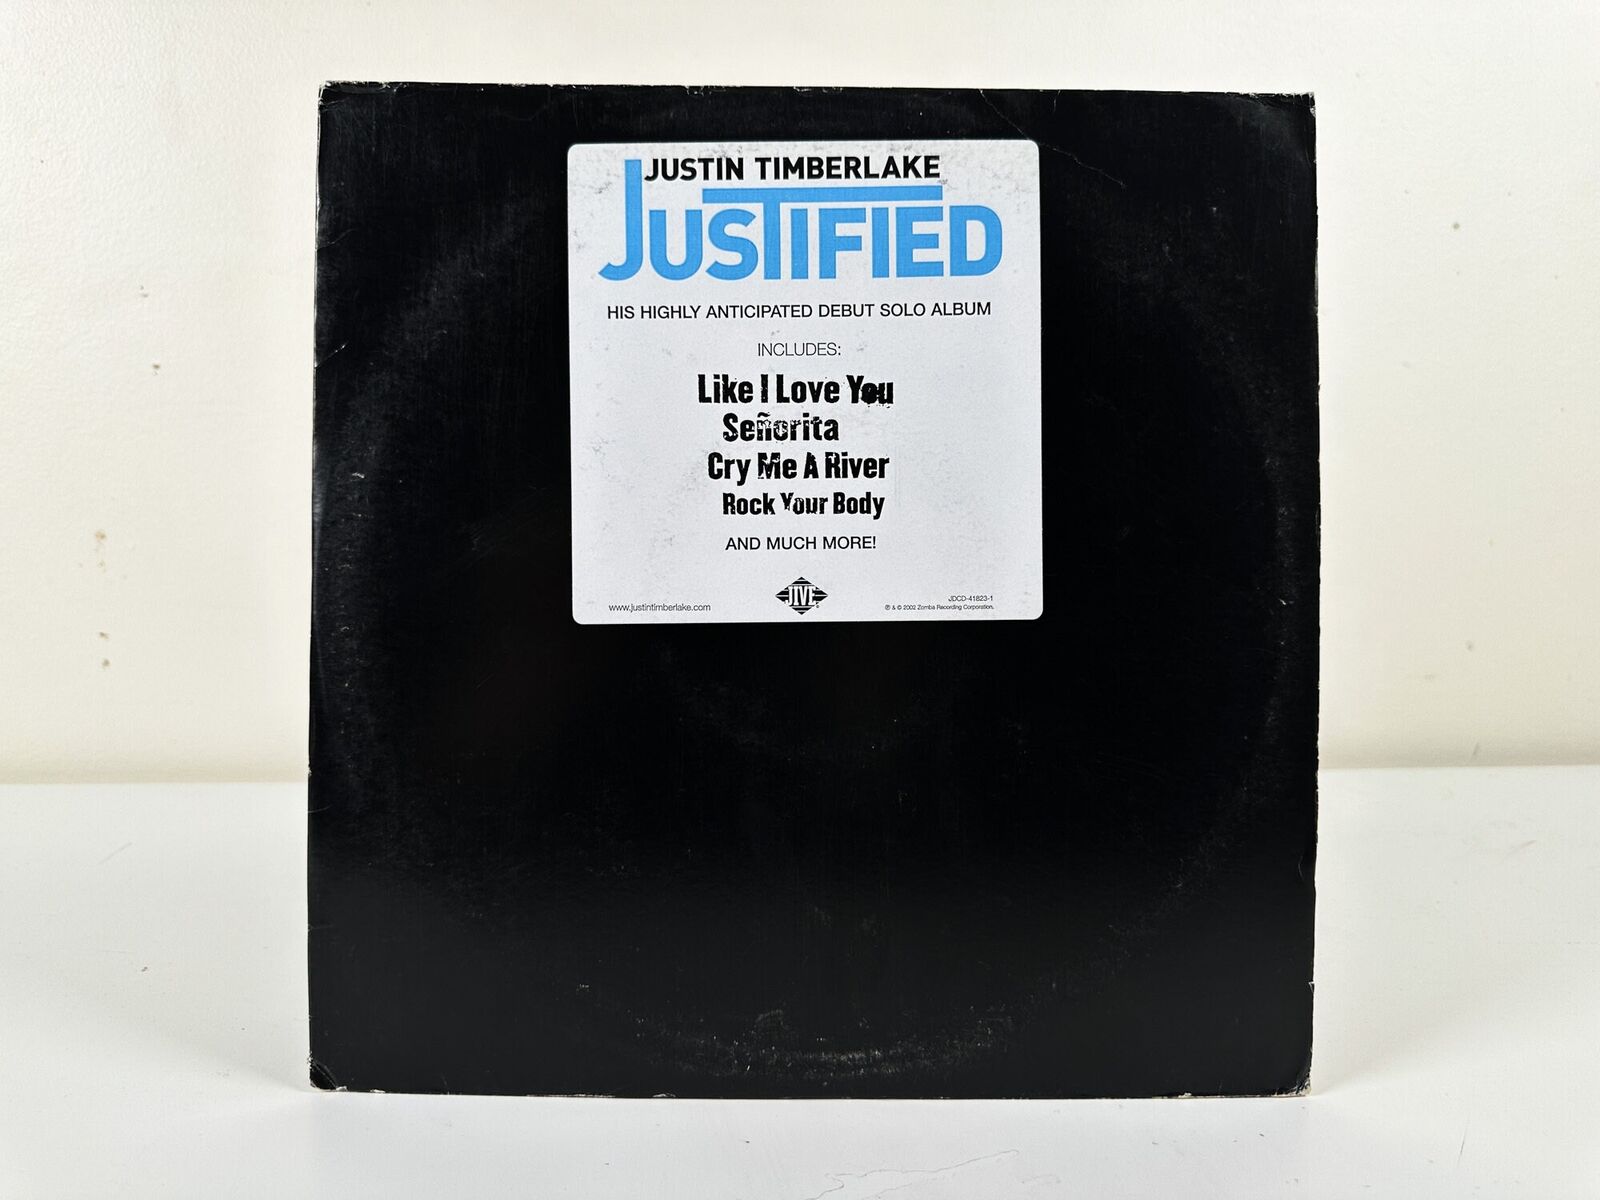 Justin Timberlake - Justified - Vinyl LP Record - 2002